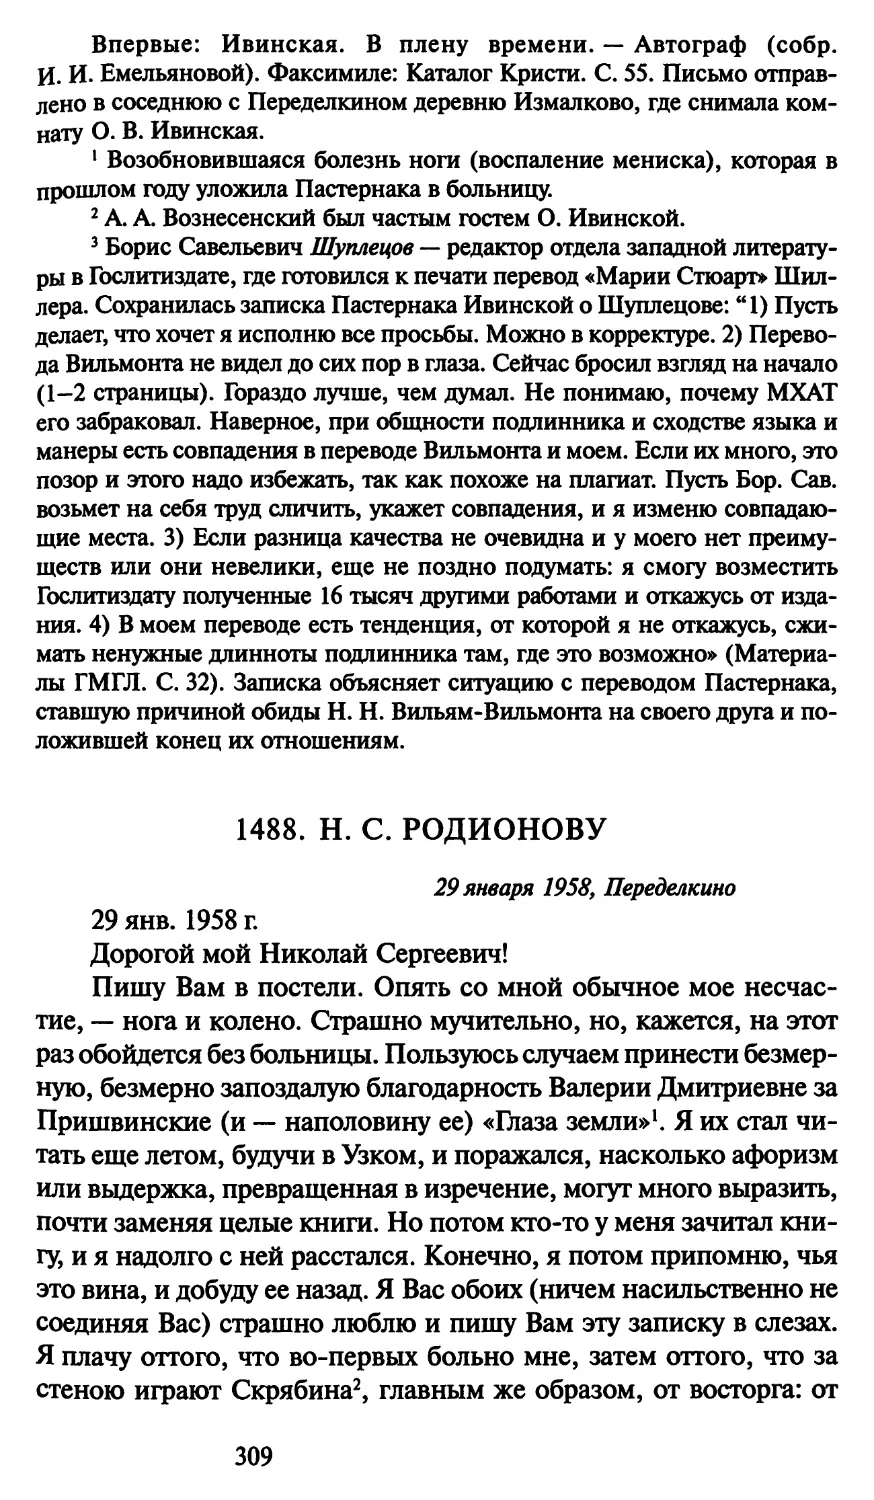 1488. Н. С. Родионову 29 января 1958